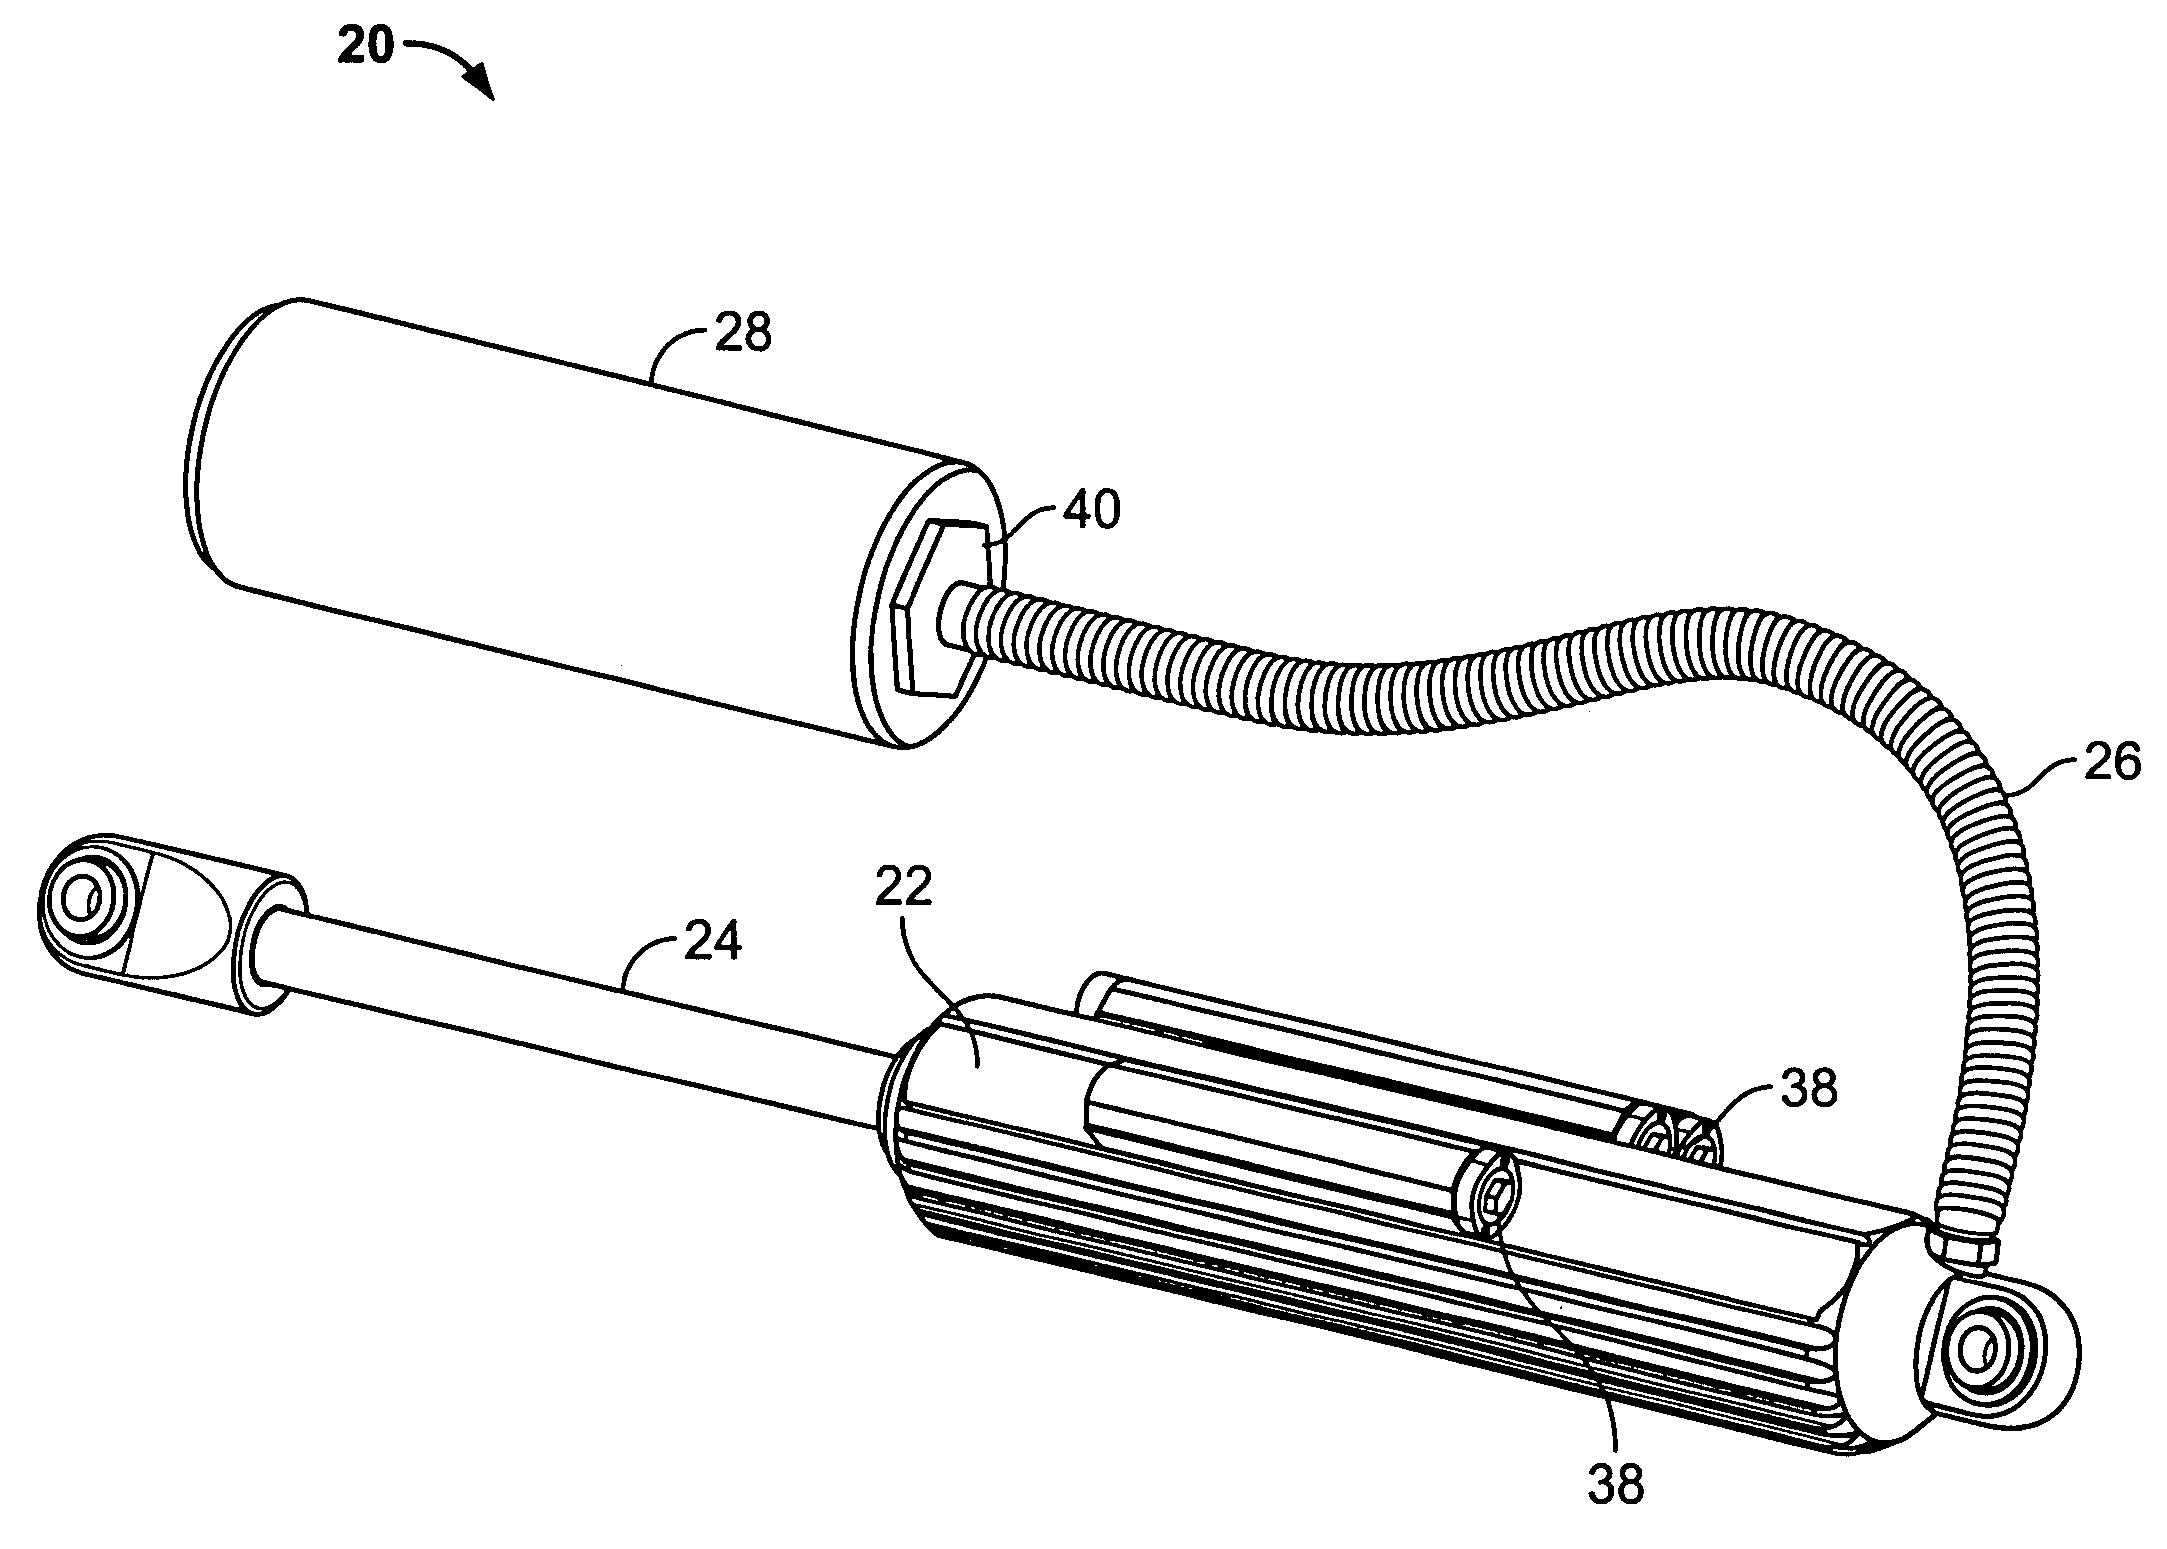 Fluid flow regulation of a vehicle shock absorber/damper